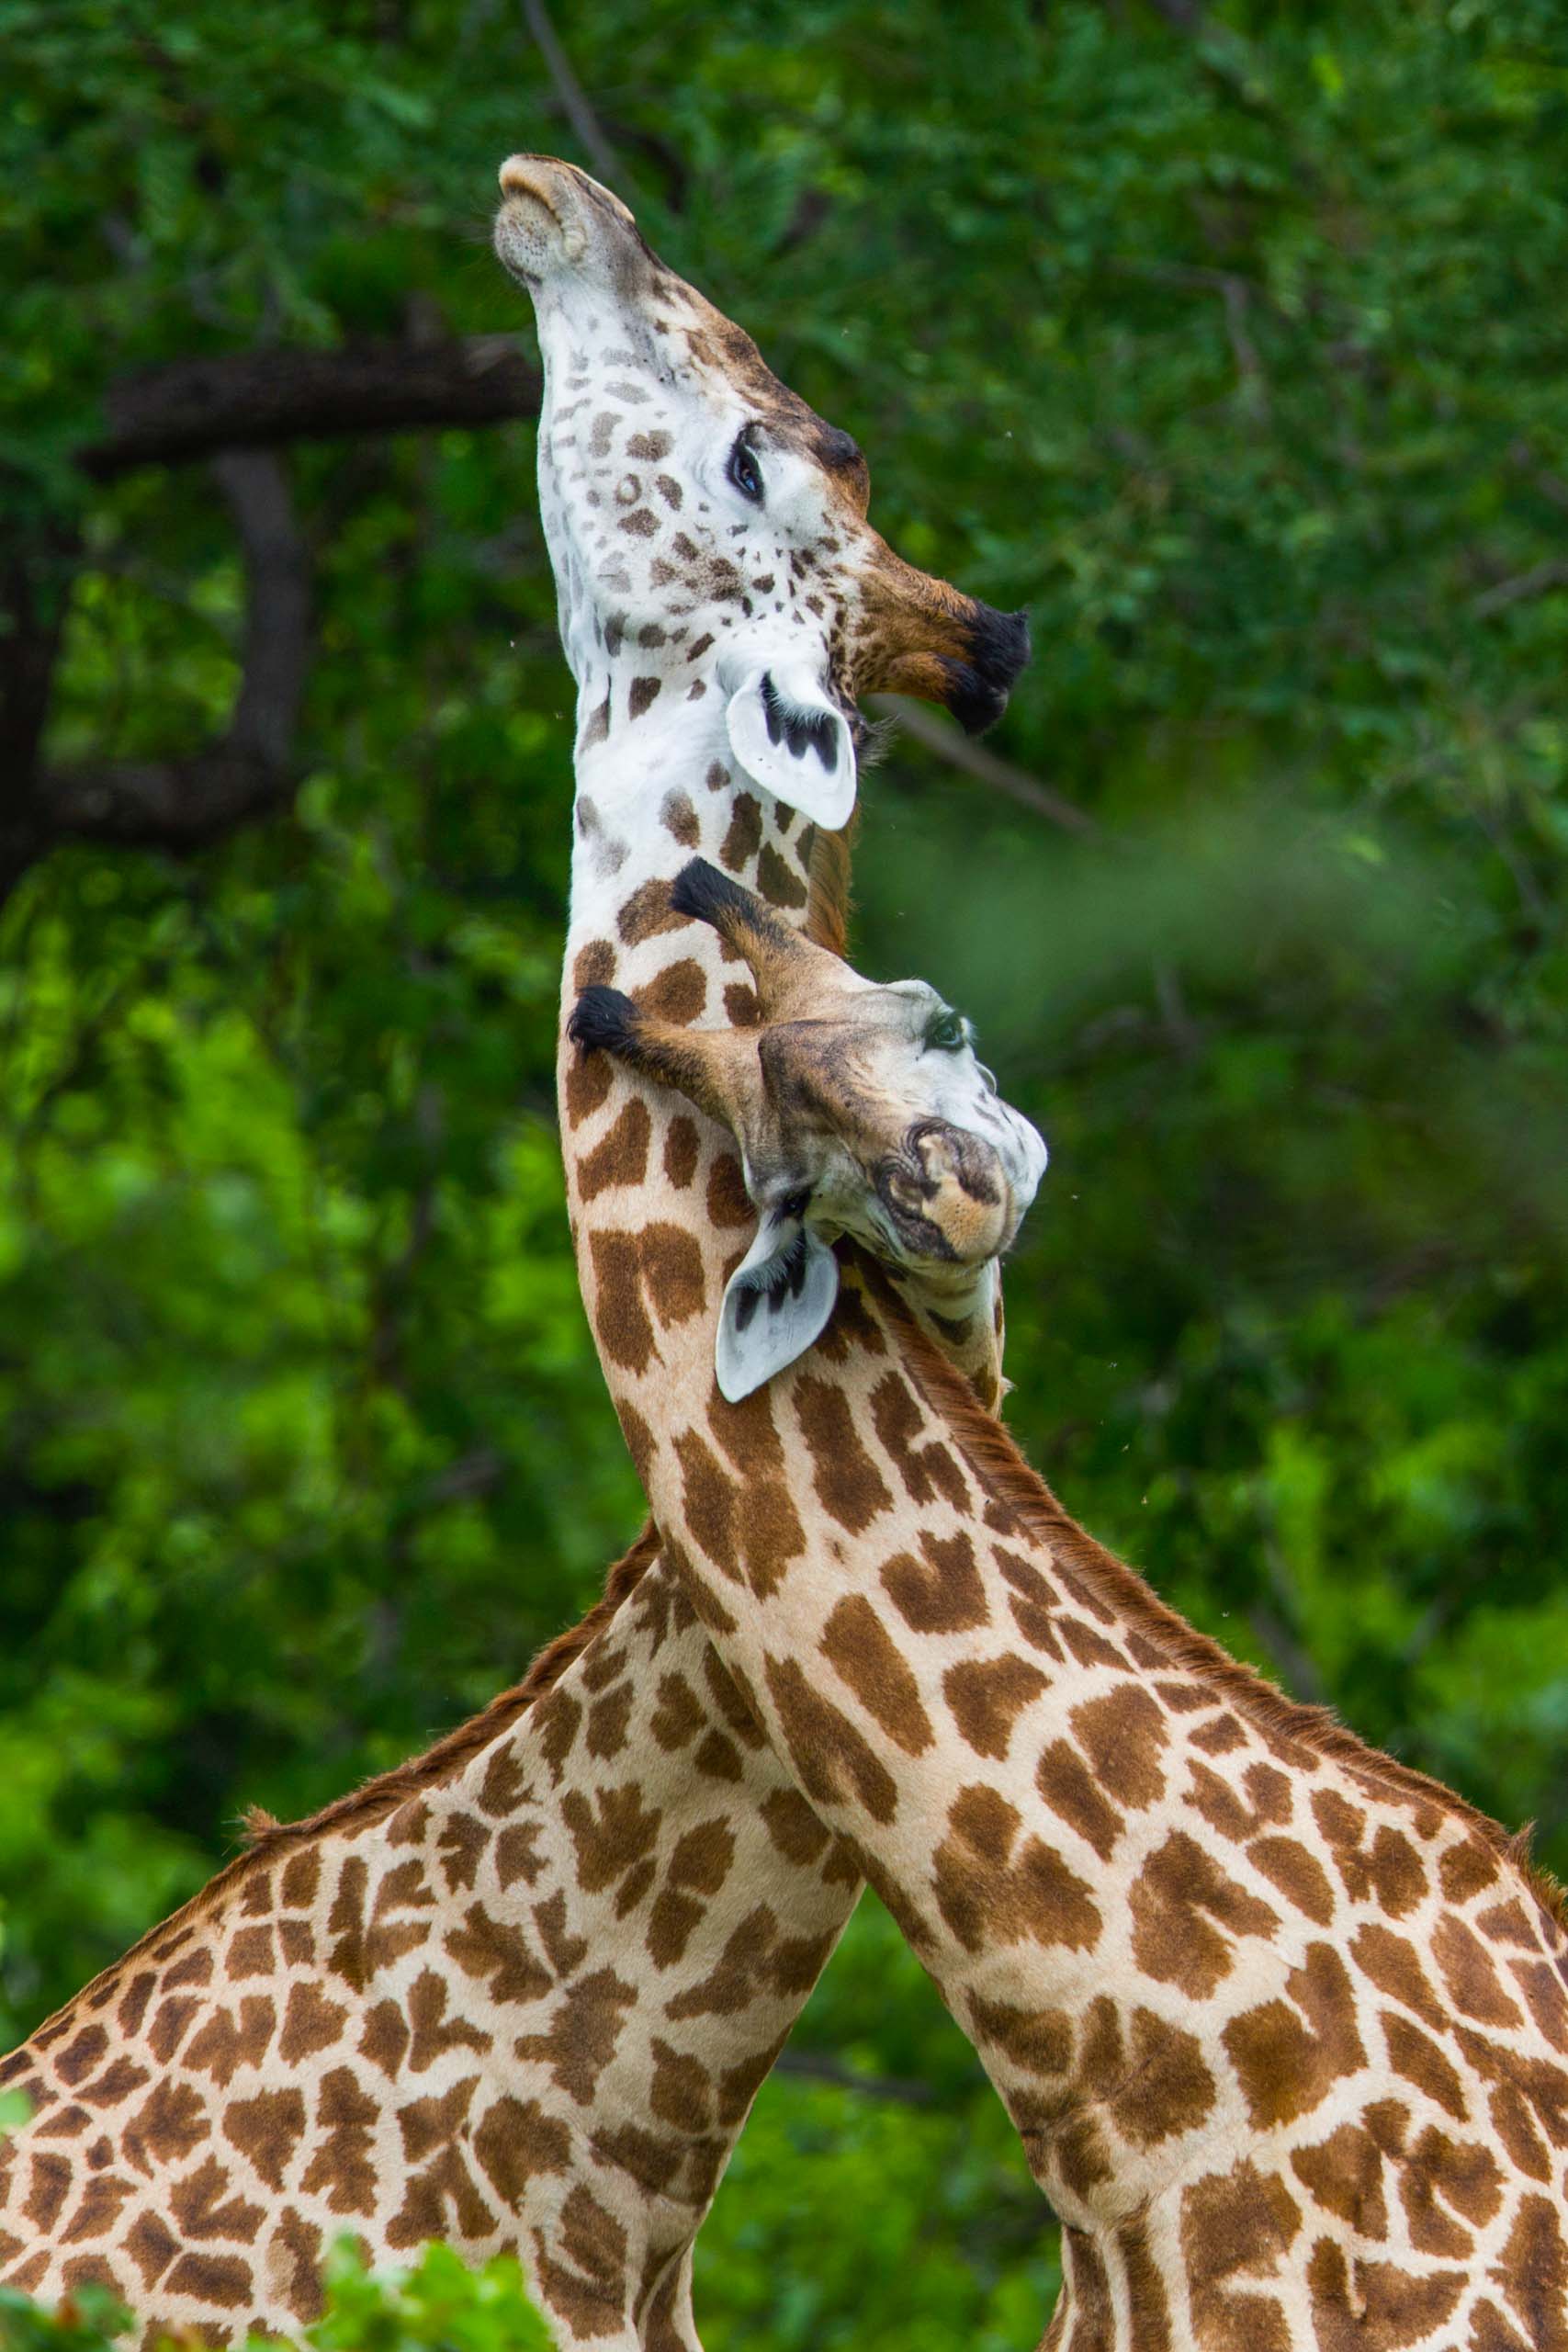 Two giraffes.